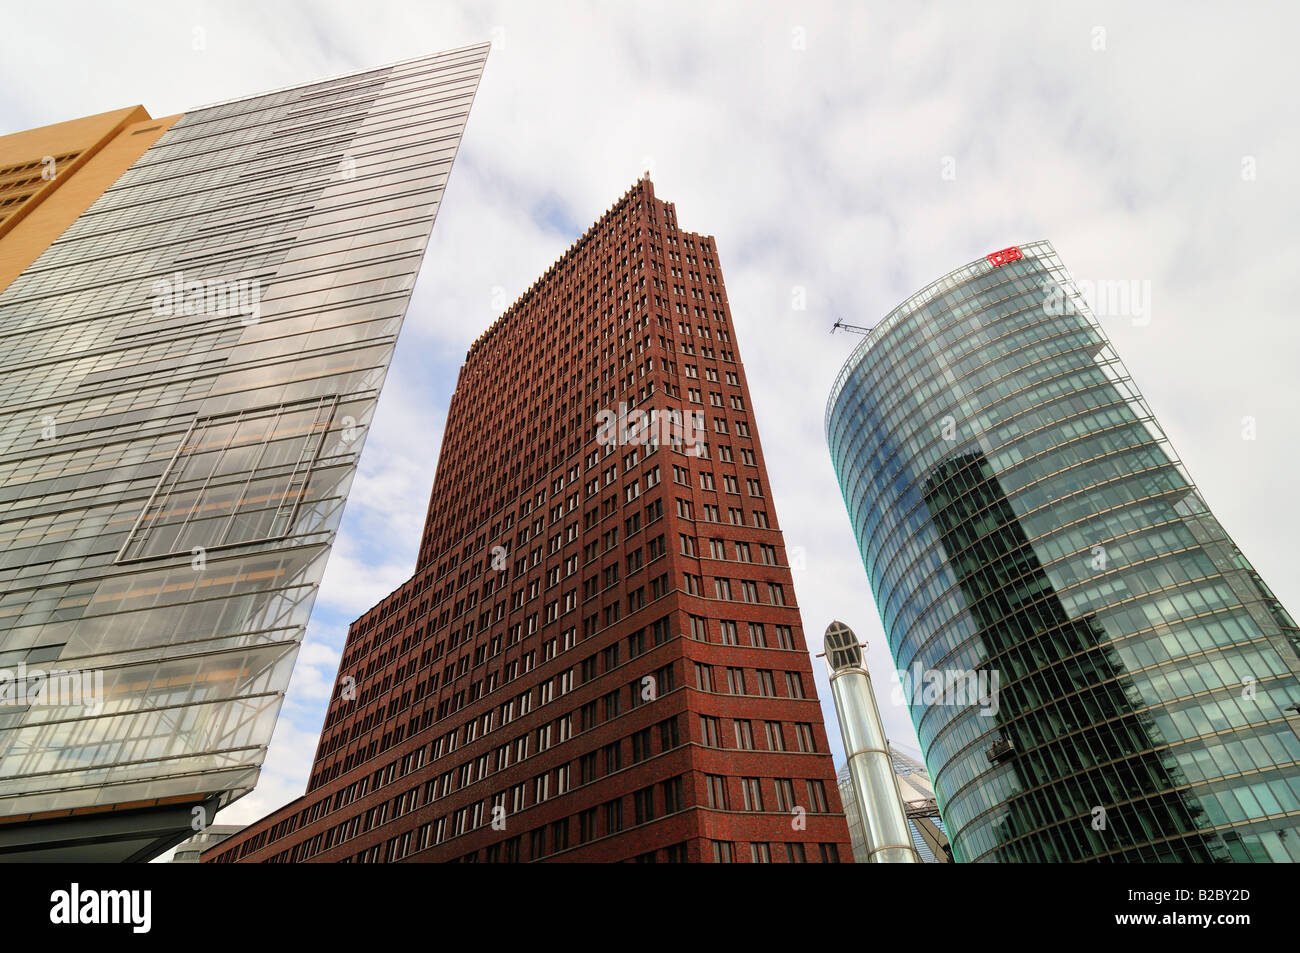 Edificios de gran altura en la Potsdamer Platz, la plaza Potsdam, de izquierda a derecha: edificio diseñado por Renzo Piano, actualmente utilizado por Foto de stock